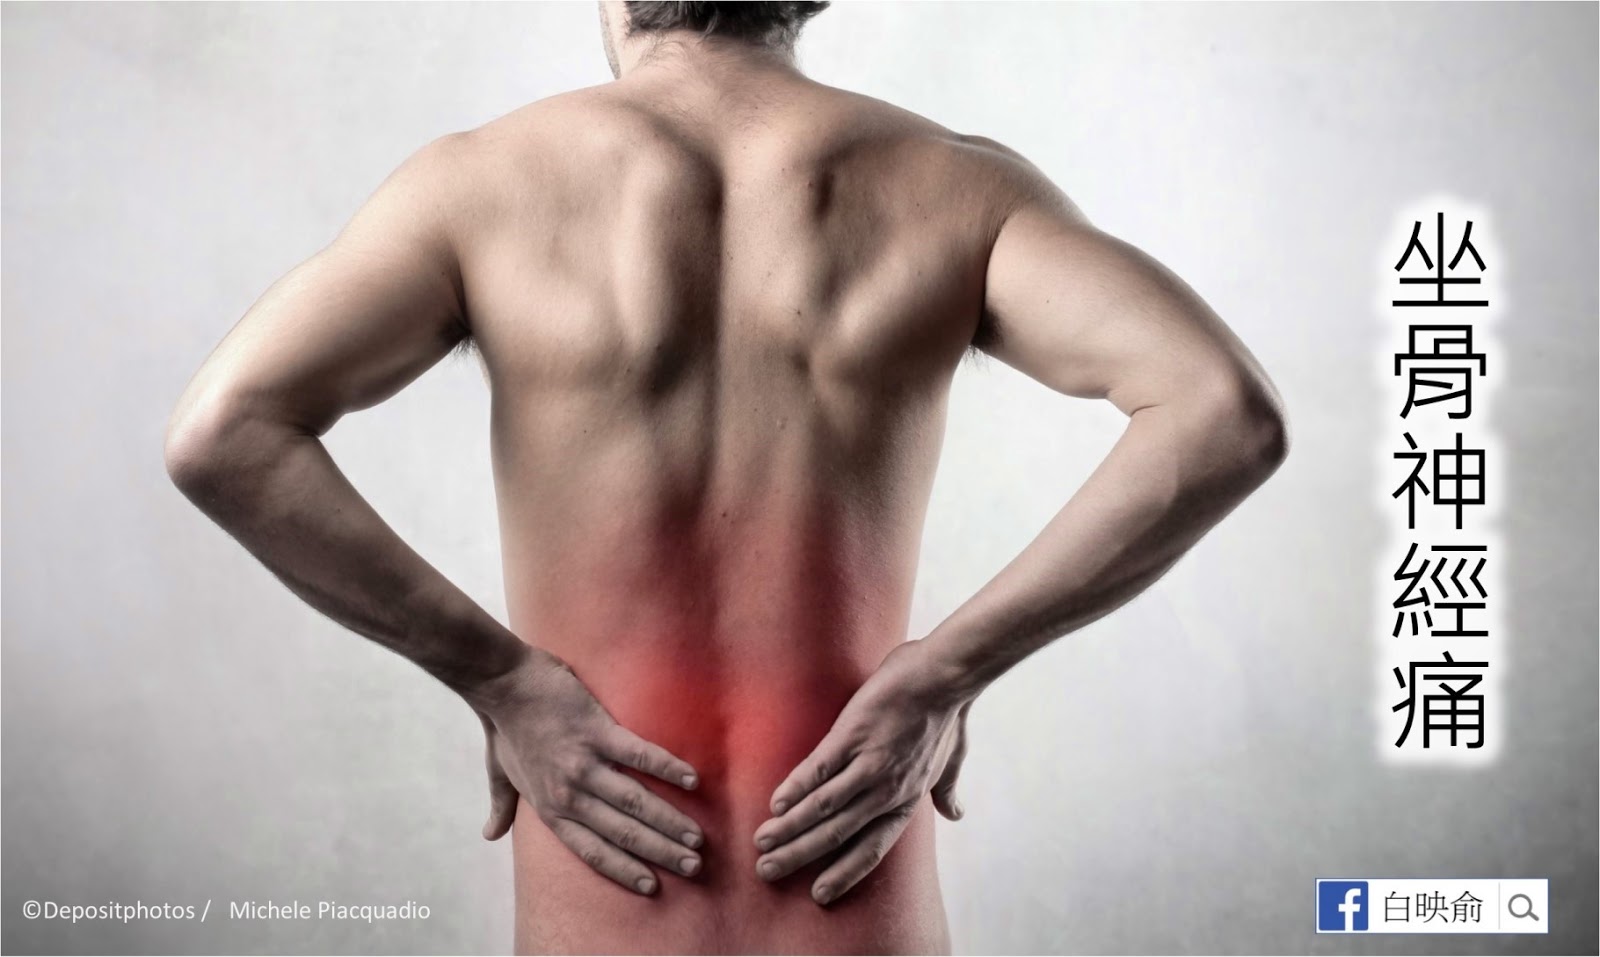 Болит поясница когда стоишь. Поясница. Воспалительная боль в спине. Спина человека. Картинка спины человека.